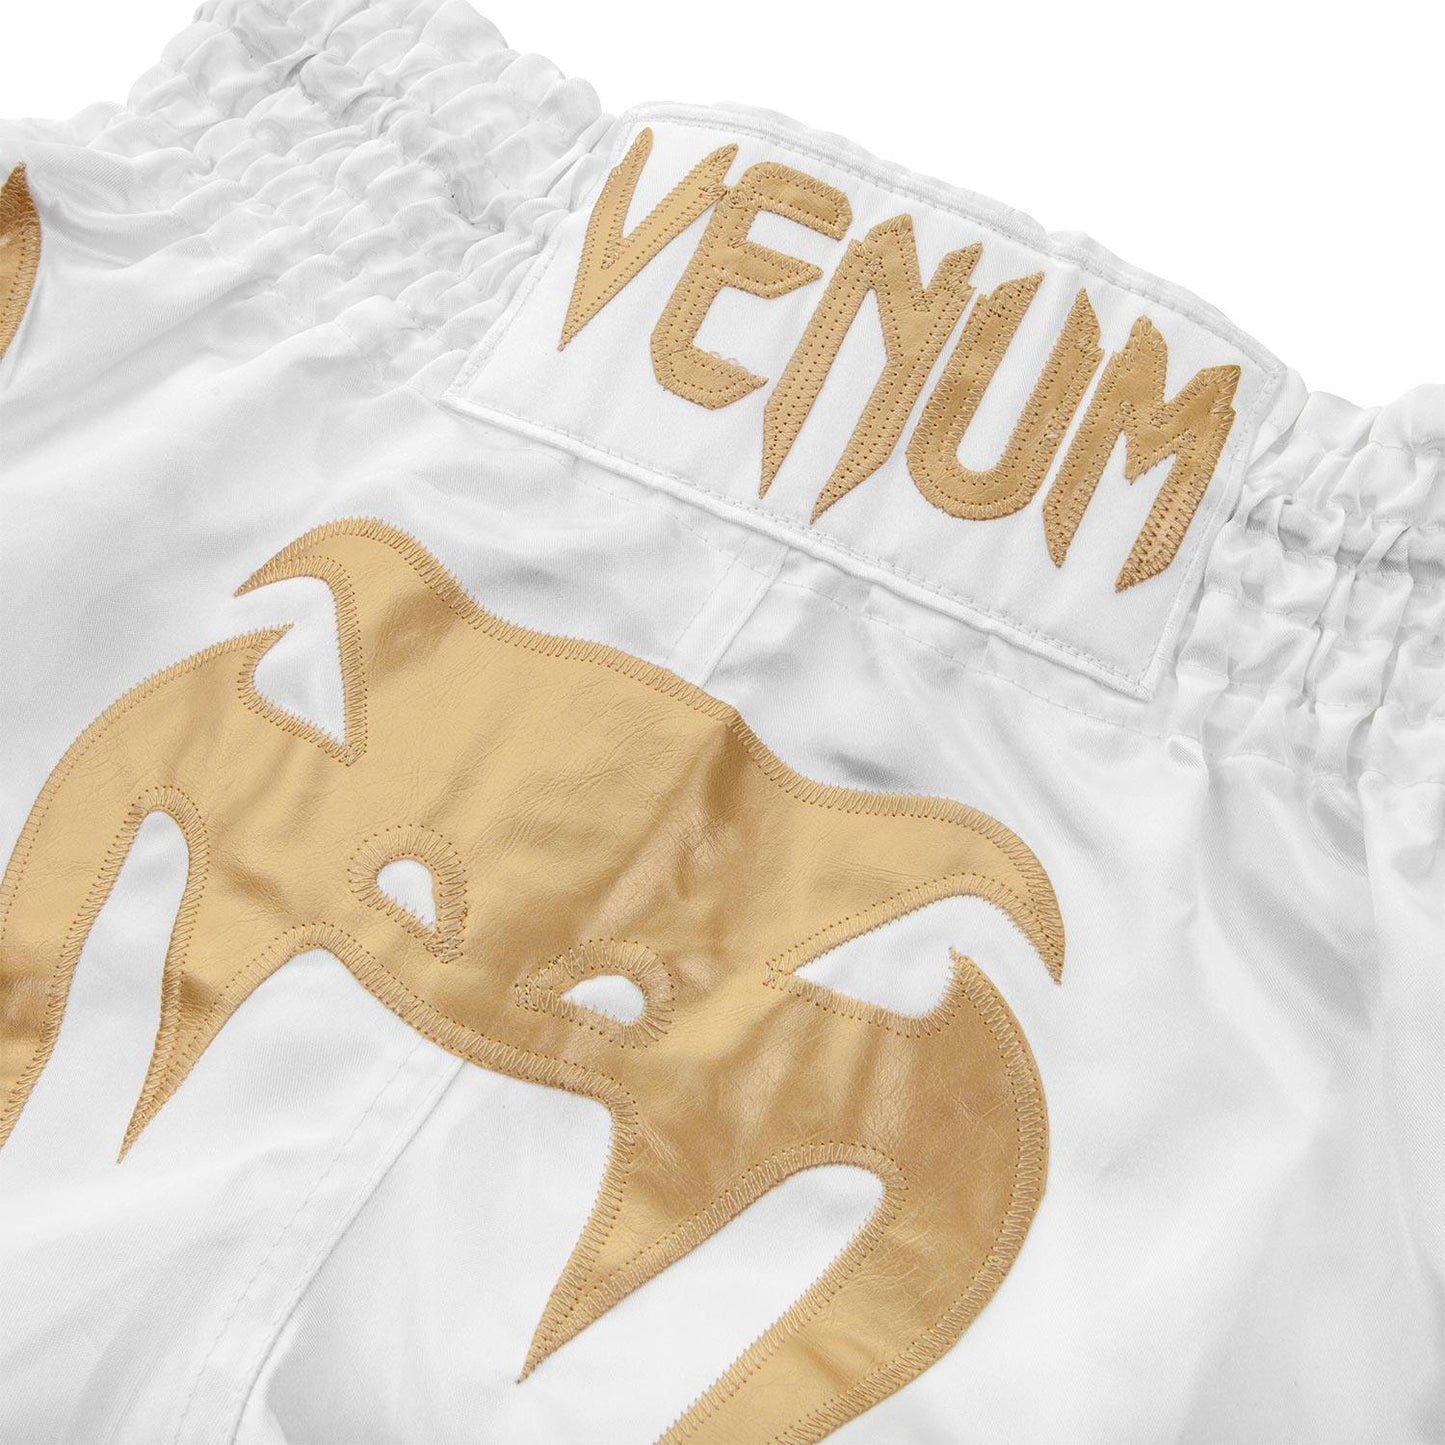 Venum Bangkok Inferno Muay Thai Shorts - White/Gold Picture 3